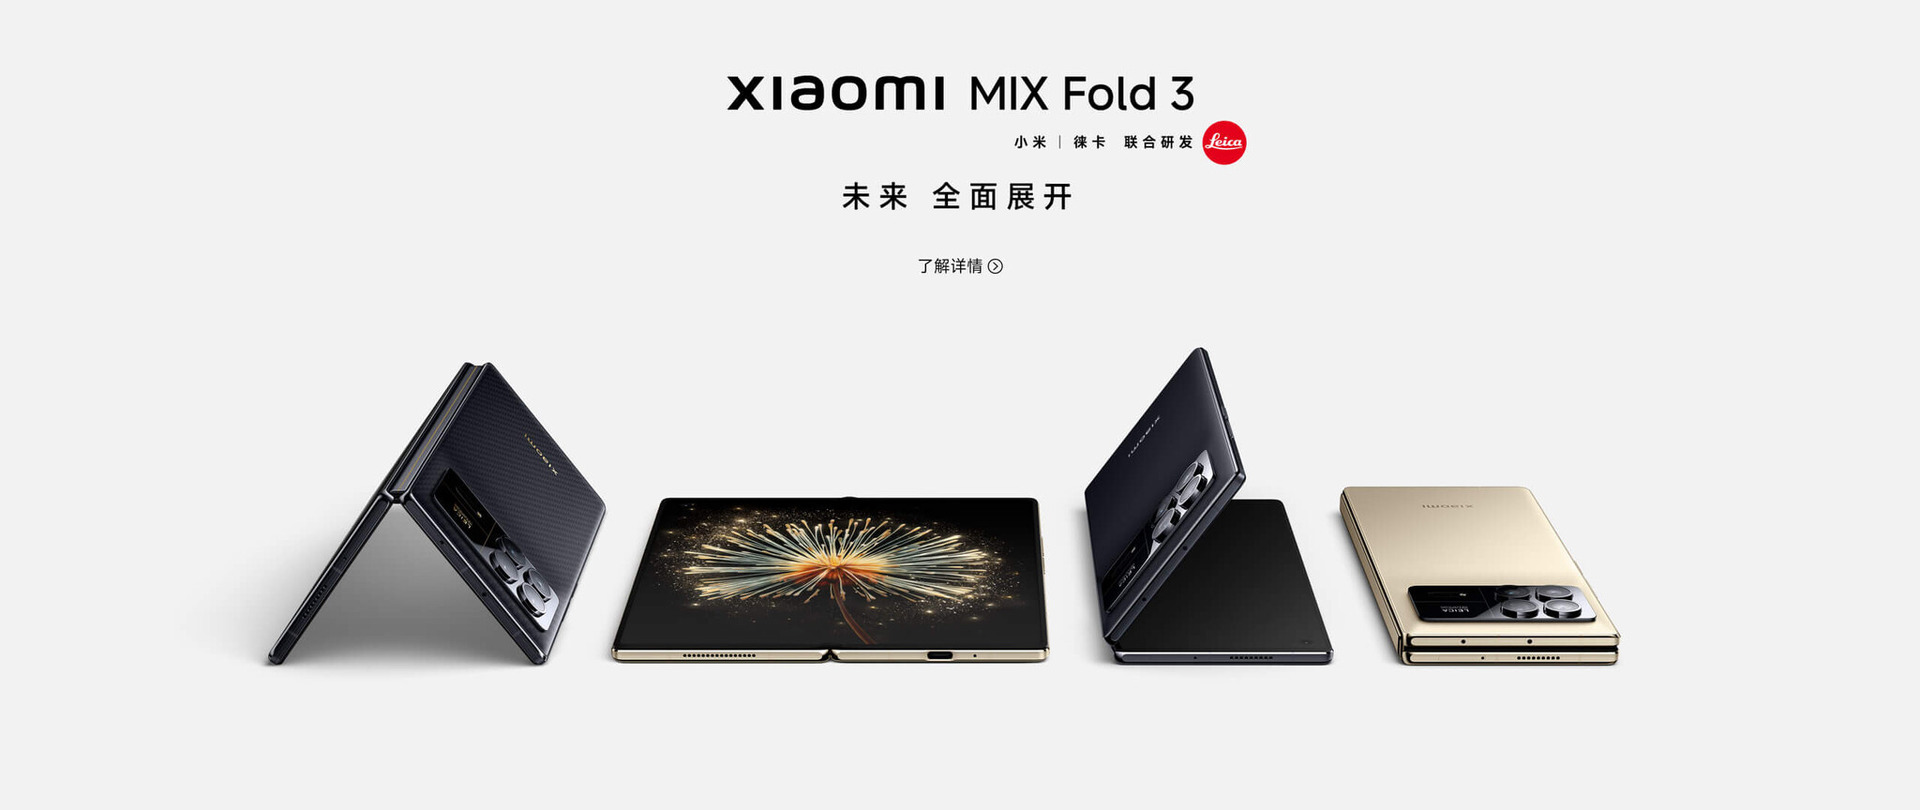 Xiaomi、新型折り畳みスマホMIX Fold 3発表。閉じても10.96mmの薄型 